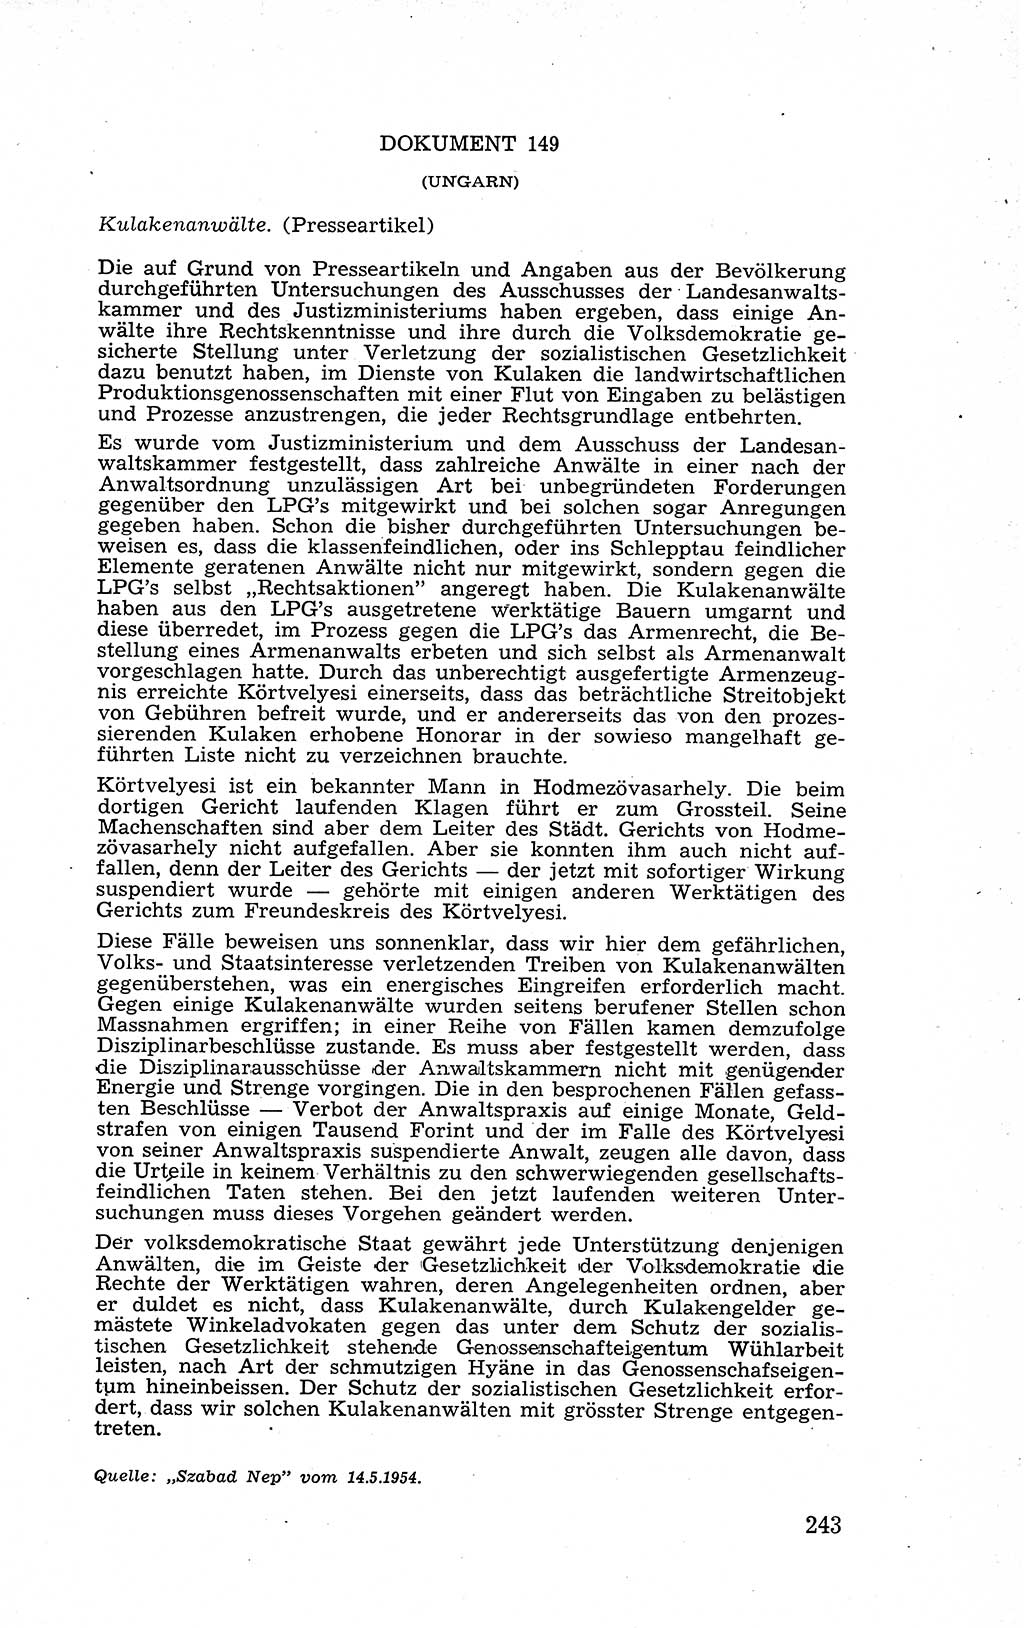 Recht in Fesseln, Dokumente, Internationale Juristen-Kommission [Bundesrepublik Deutschland (BRD)] 1955, Seite 243 (R. Dok. IJK BRD 1955, S. 243)